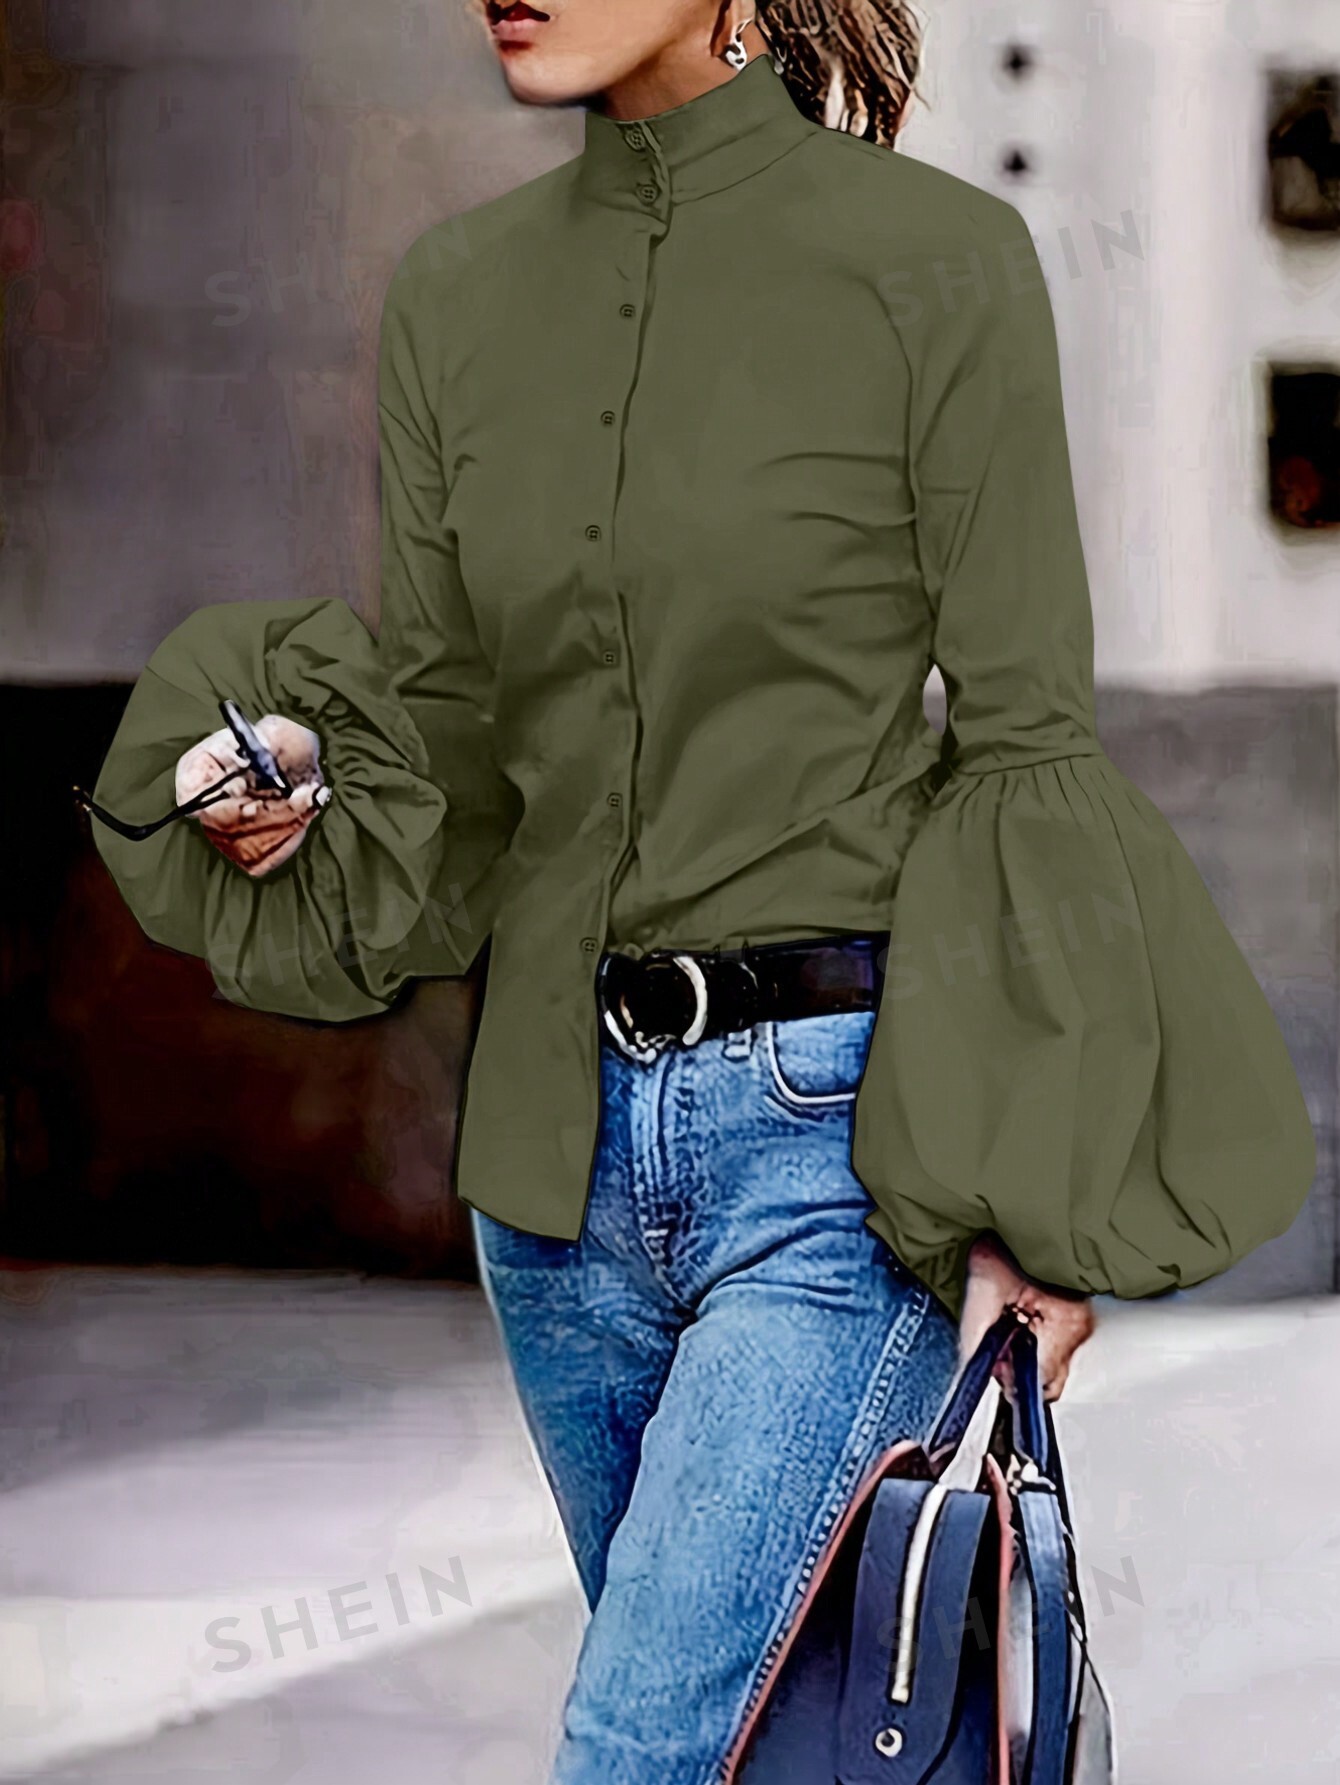 SHEIN Essnce Женская блузка с воротником-стойкой и рукавами-фонариками, темно-зеленый рубашка женская из хлопка и льна блузка свободного покроя в ретро стиле с рукавами фонариками средней длины лето